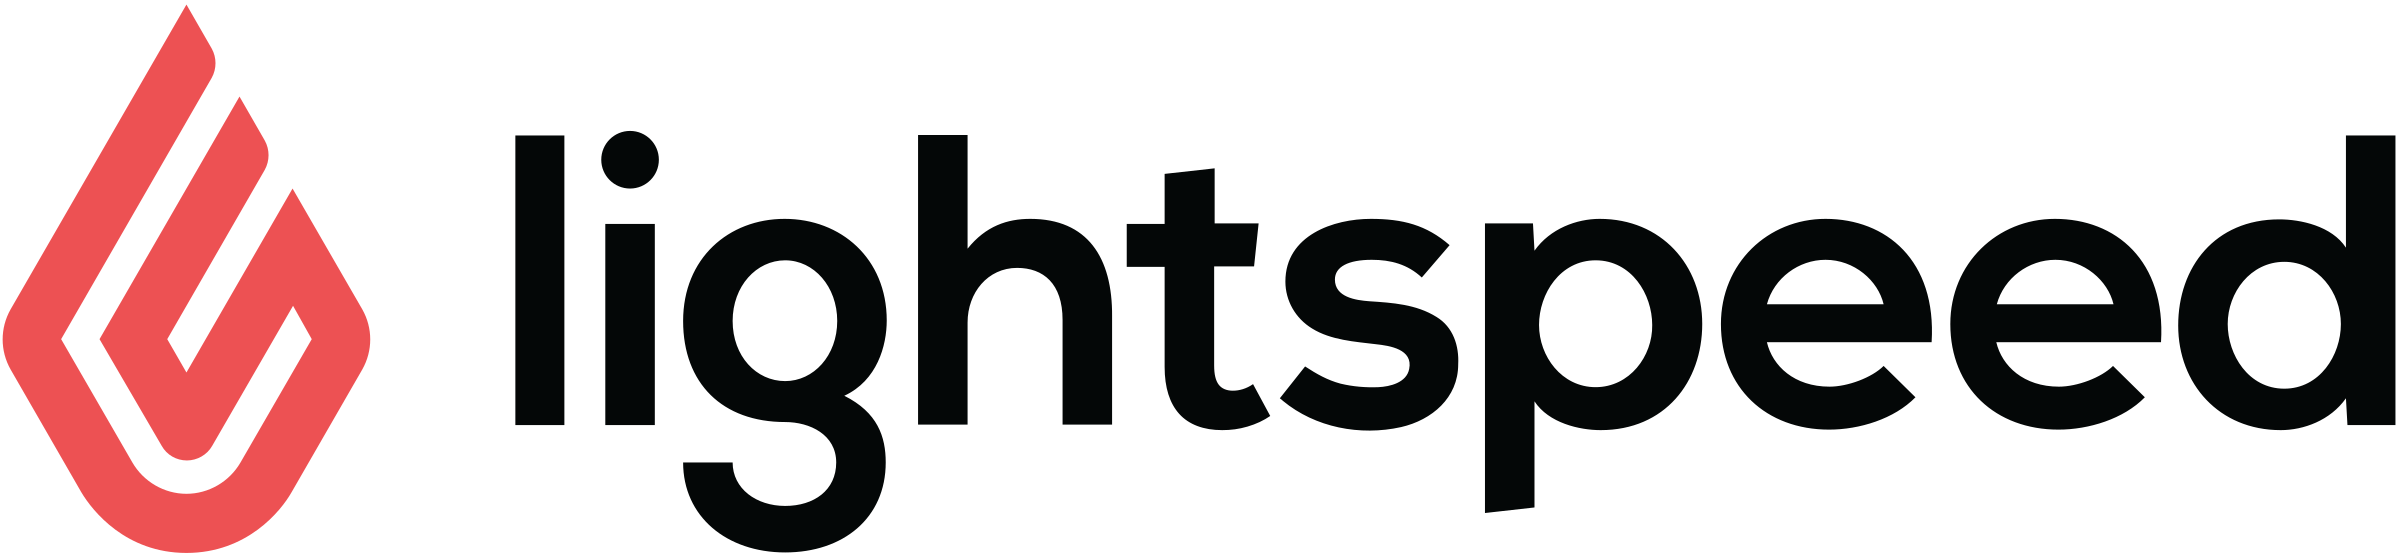 lightspeed-logo-png-transparent-2